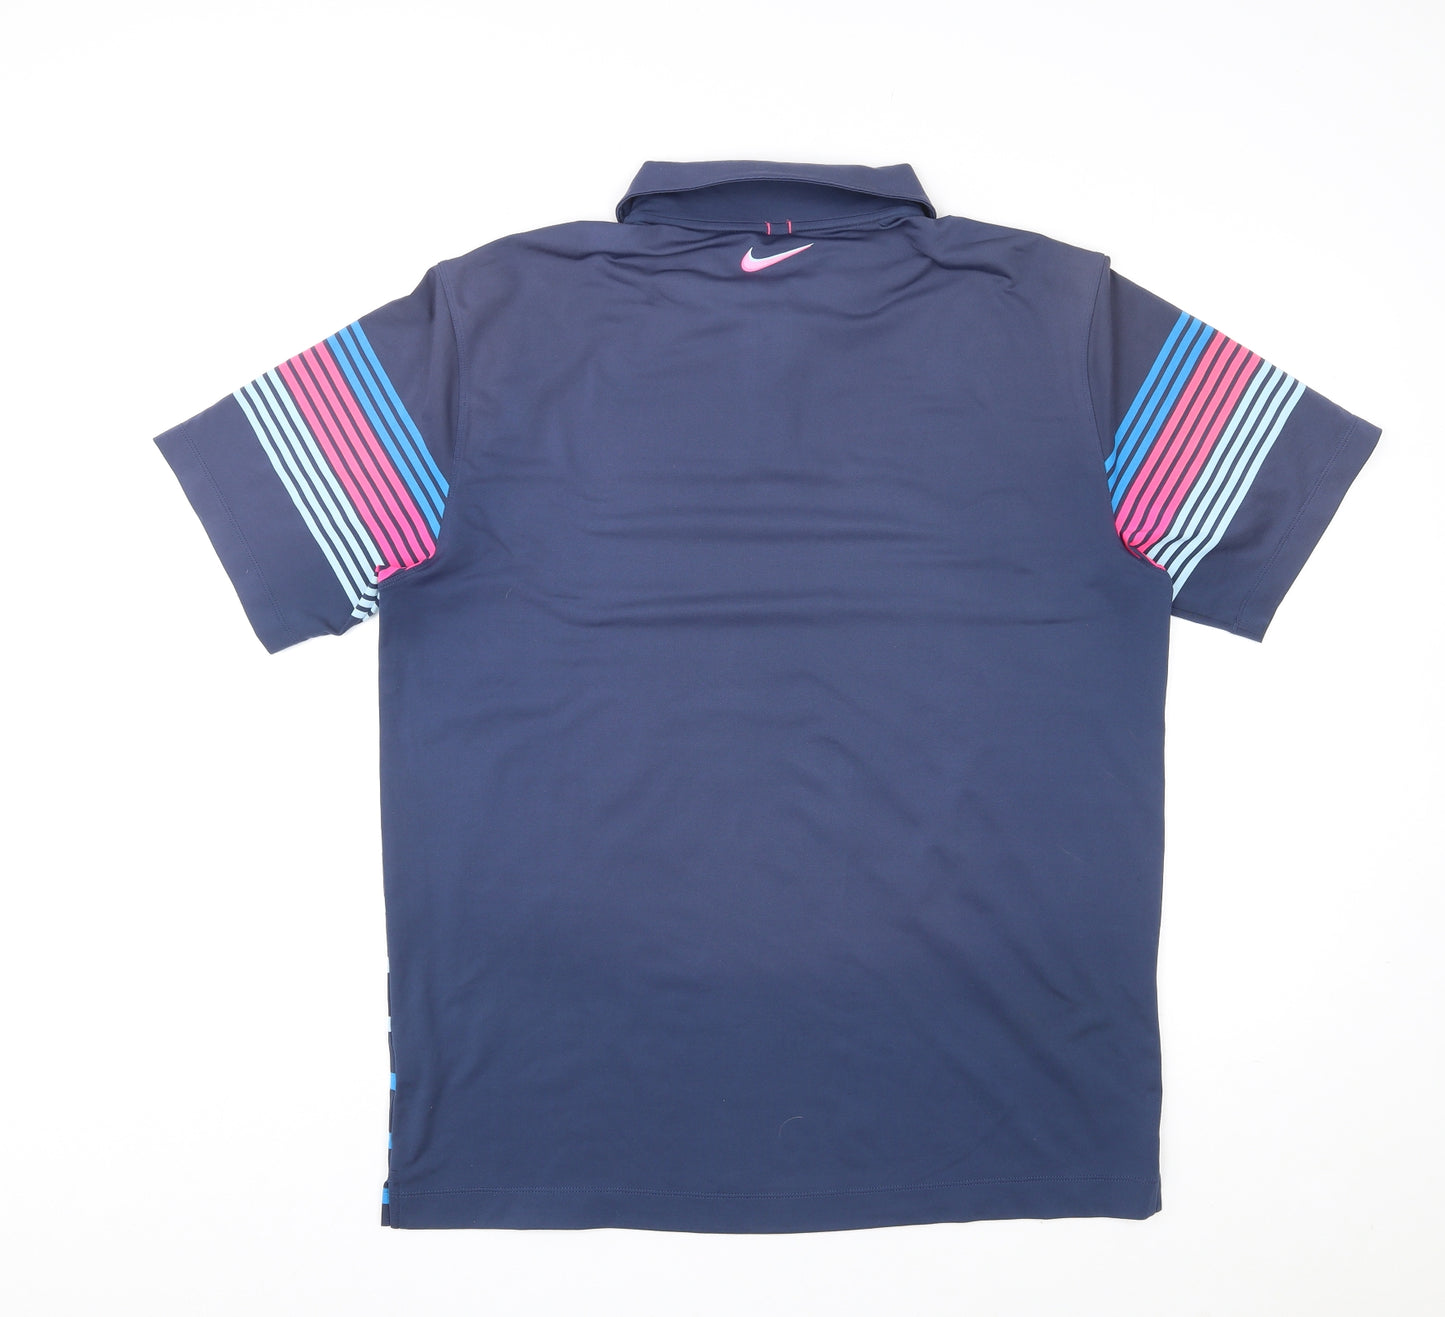 Nike Mens Multicoloured Striped Elastane Polo Size L Collared Button - Golf